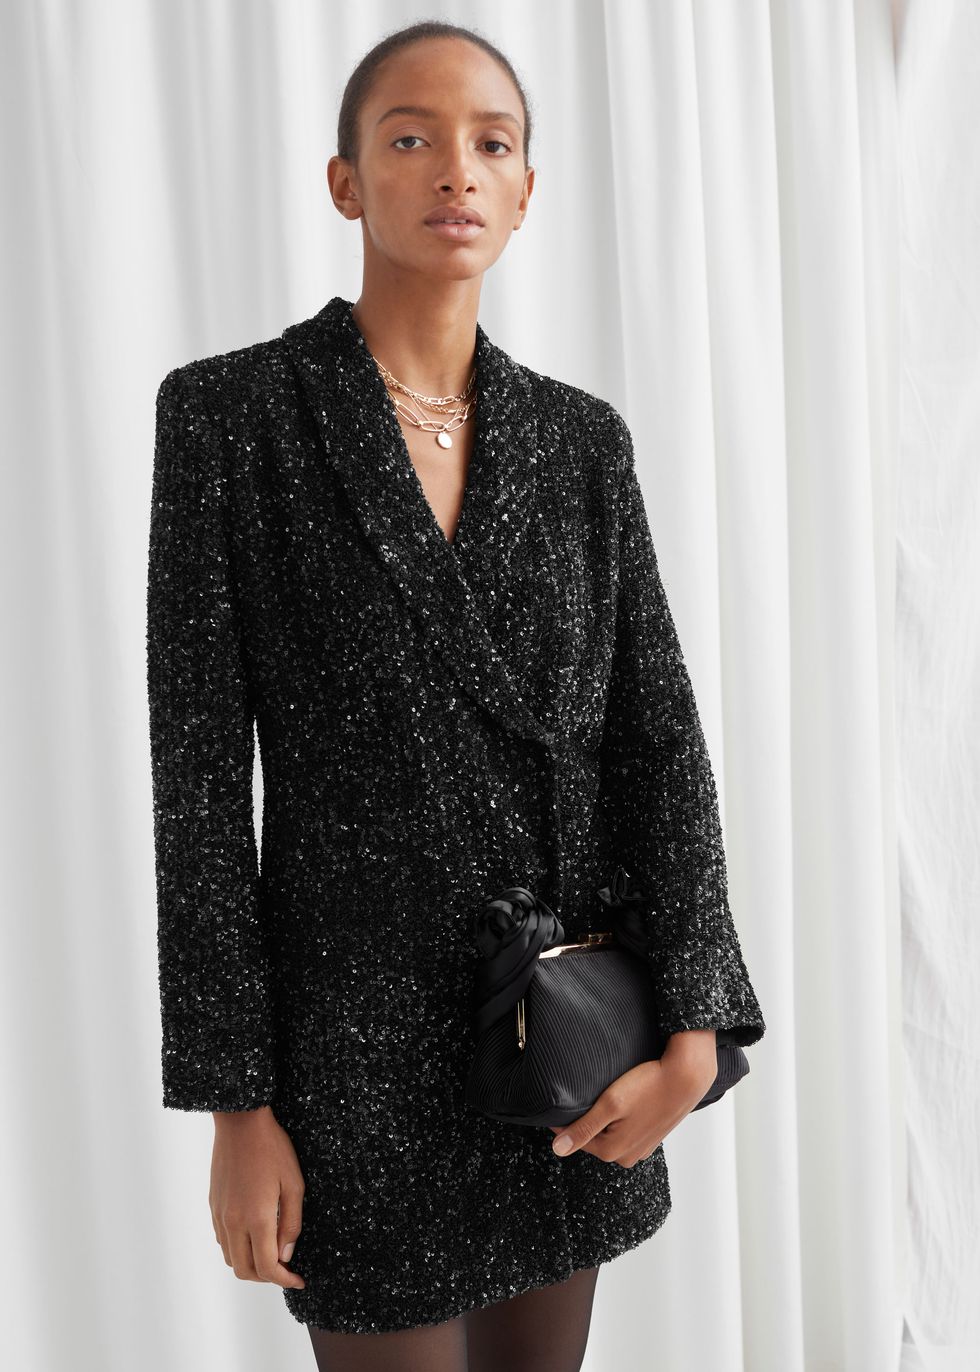 Tra i vestiti per andare a ballare della moda inverno 2020 guarda l'ultimo look con le paillettes di Valentina Ferragni, un blazer-dress nero da copiare ASAP.